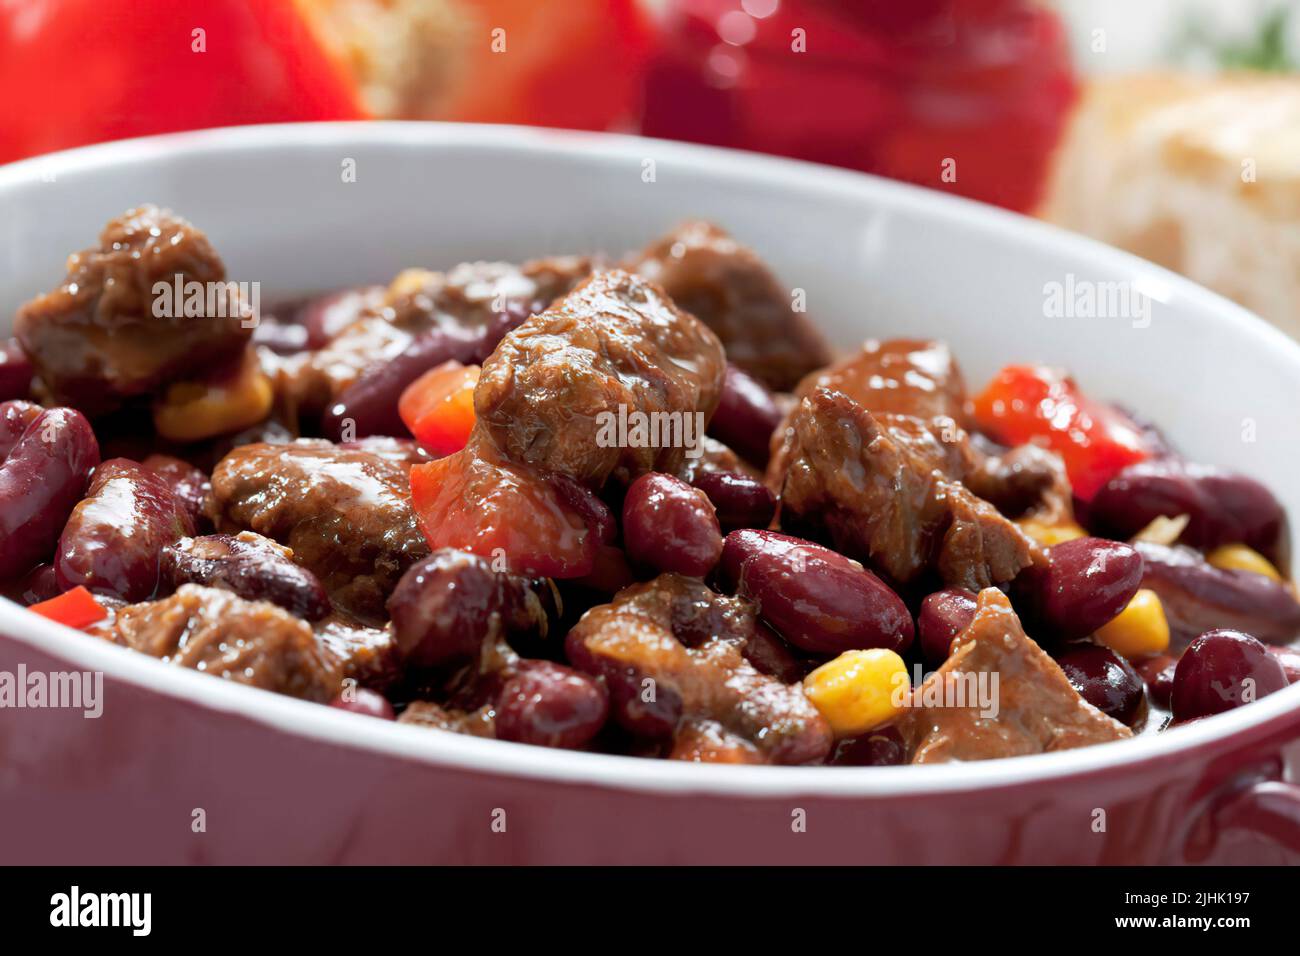 Chili con carne in pot, studio shot Stock Photo